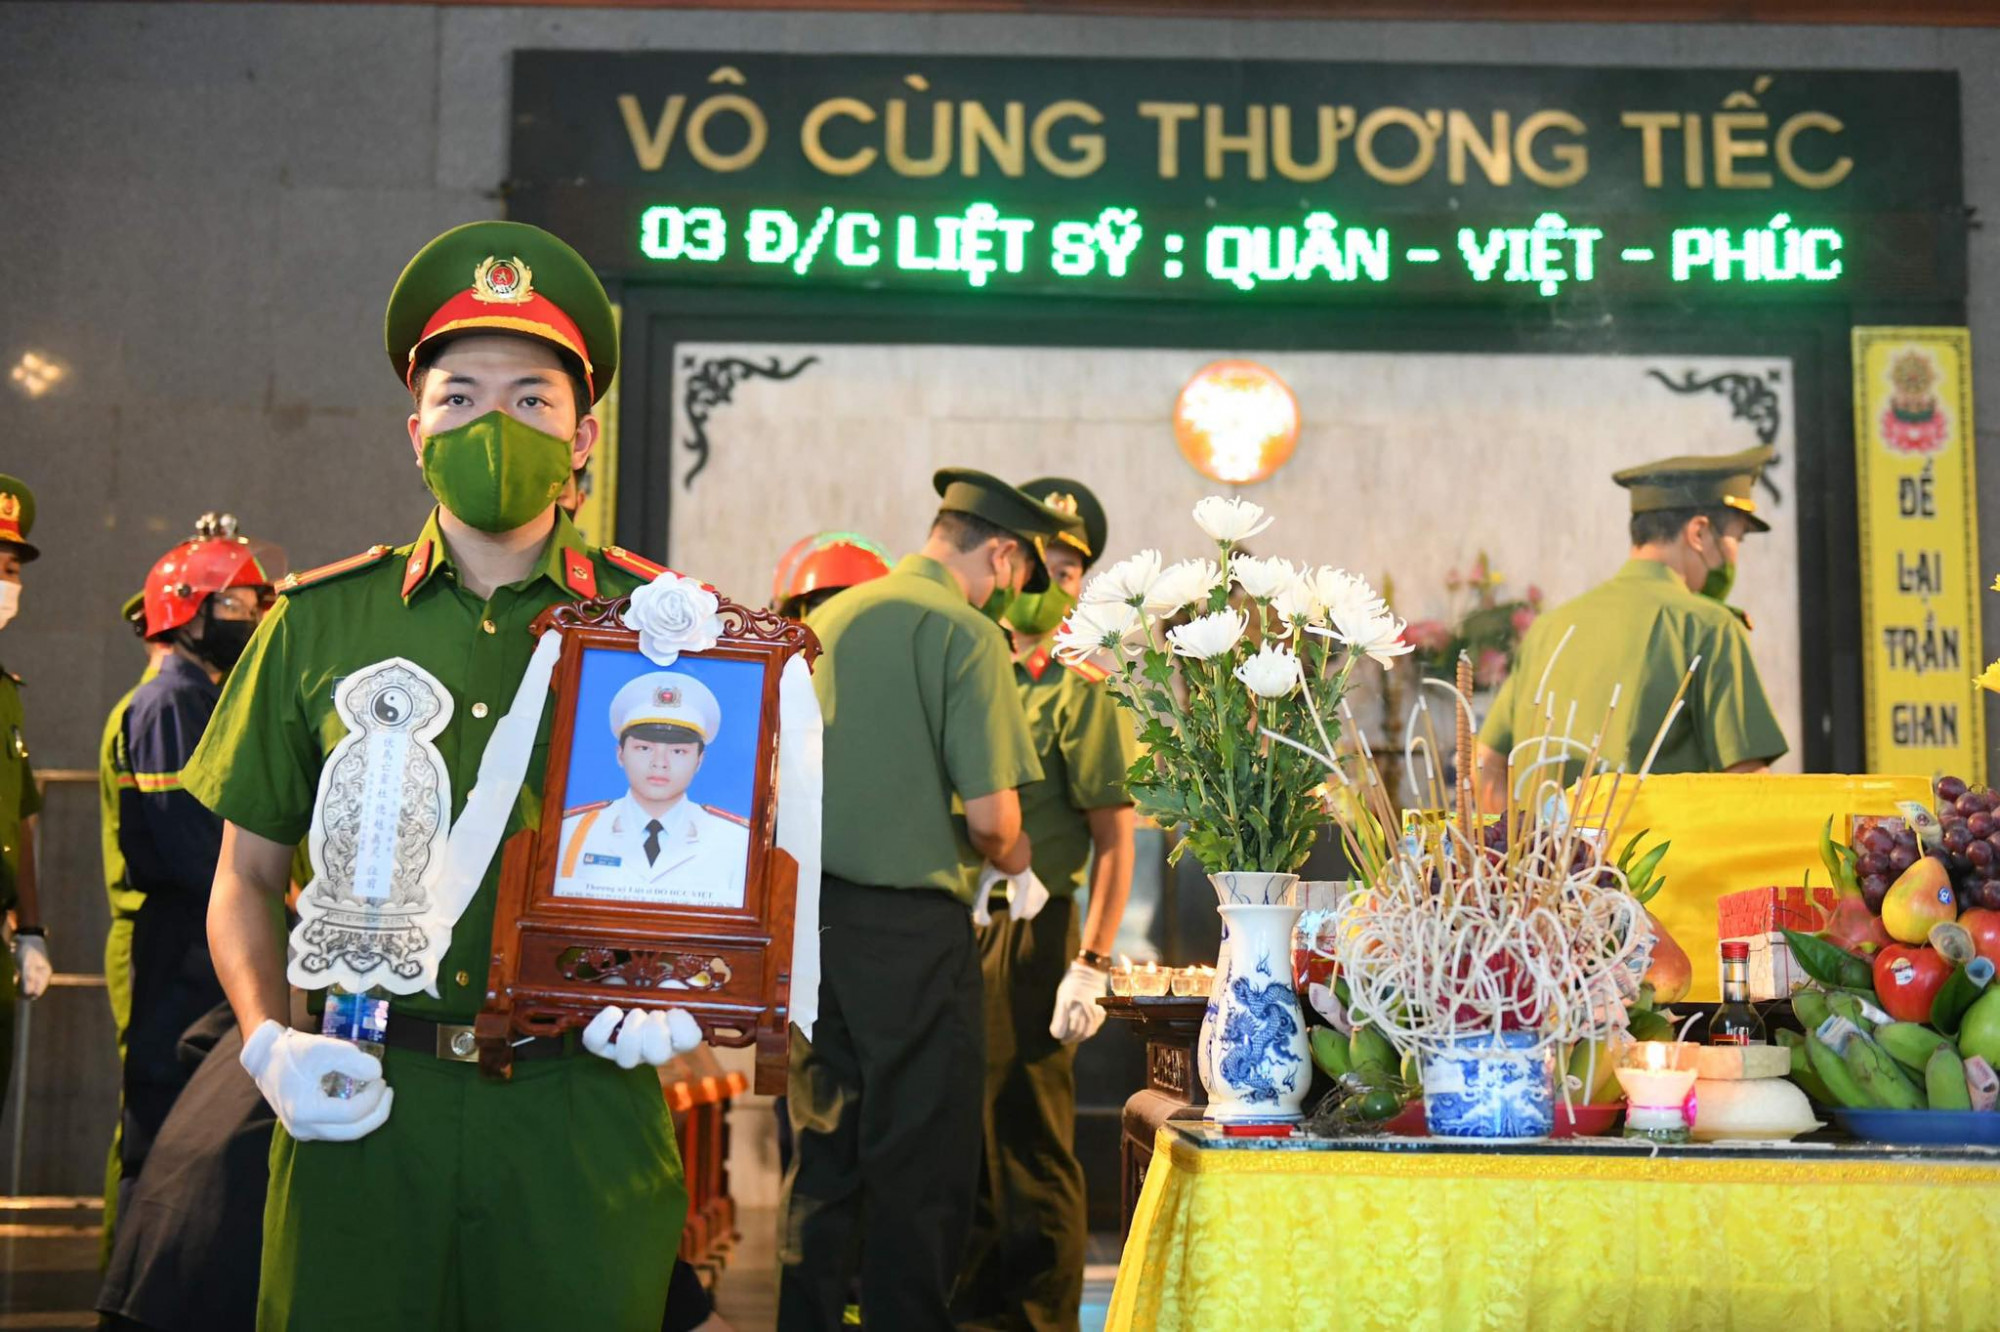 Đưa thi hài 3 liệt sĩ từ bệnh viện qua nhà riêng và về Nhà tang lễ quốc gia (số 5 Trần Thánh Tông, phường Bạch Đằng, quận Hai Bà Trưng, TP Hà Nội).